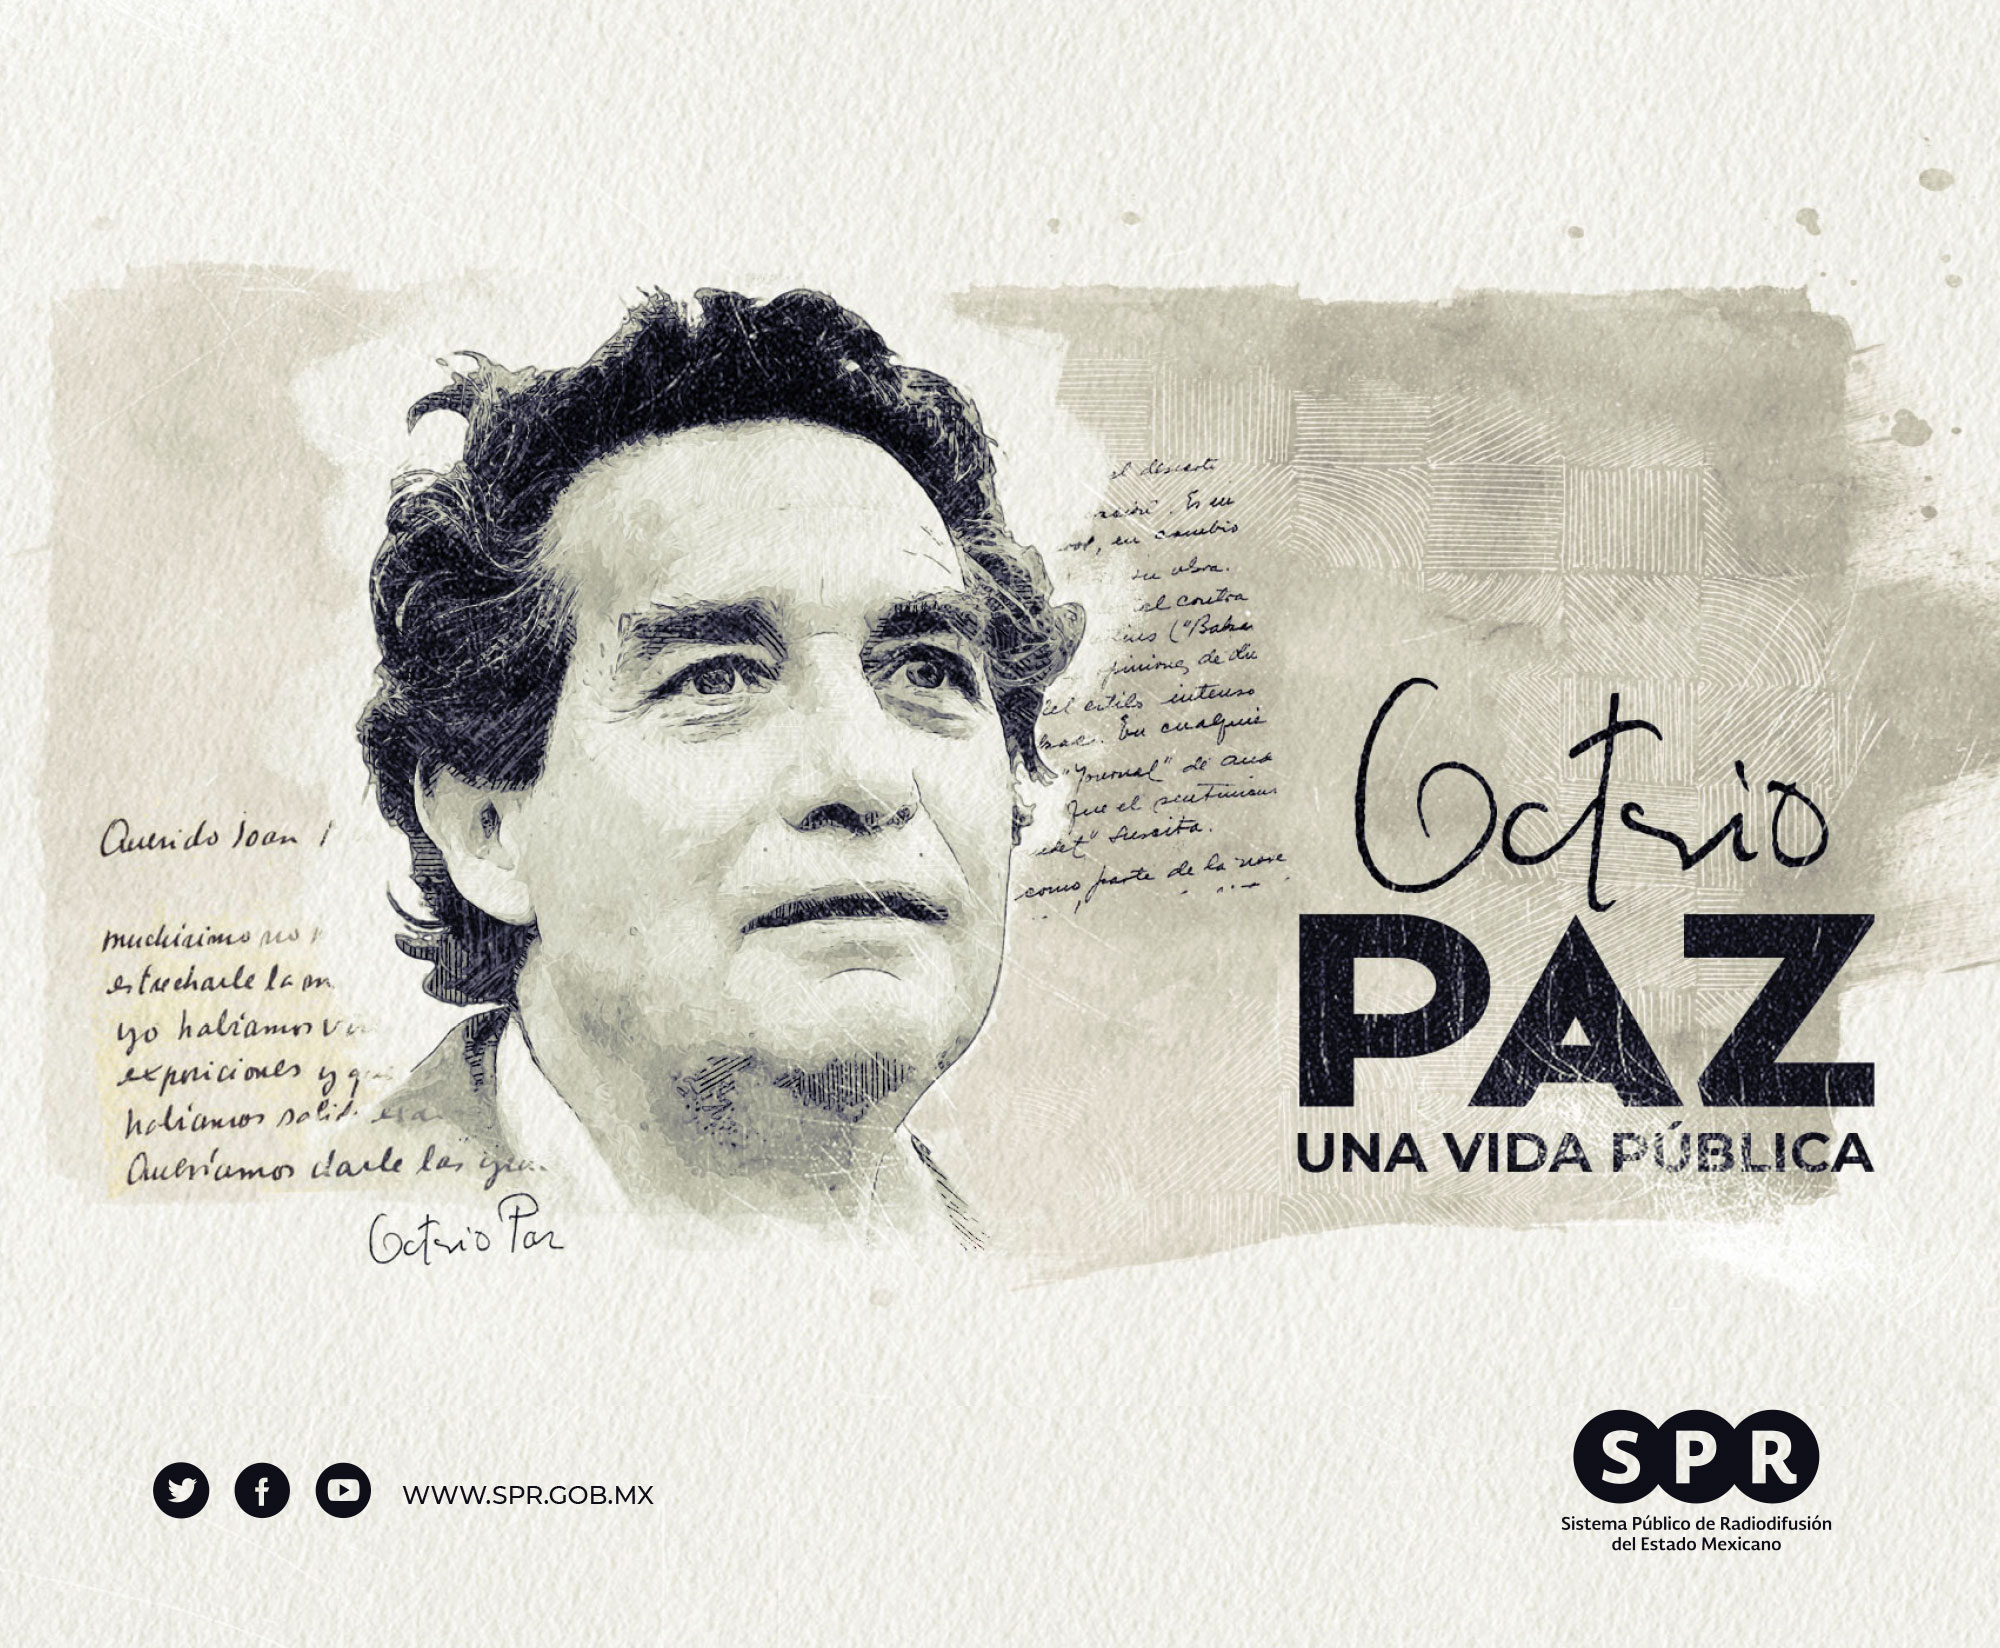 <i>Canal Catorce</i> del SPR estrenará el documental “Octavio Paz. Una vida pública”, el 19 de abril, en el marco de su 25 aniversario luctuoso